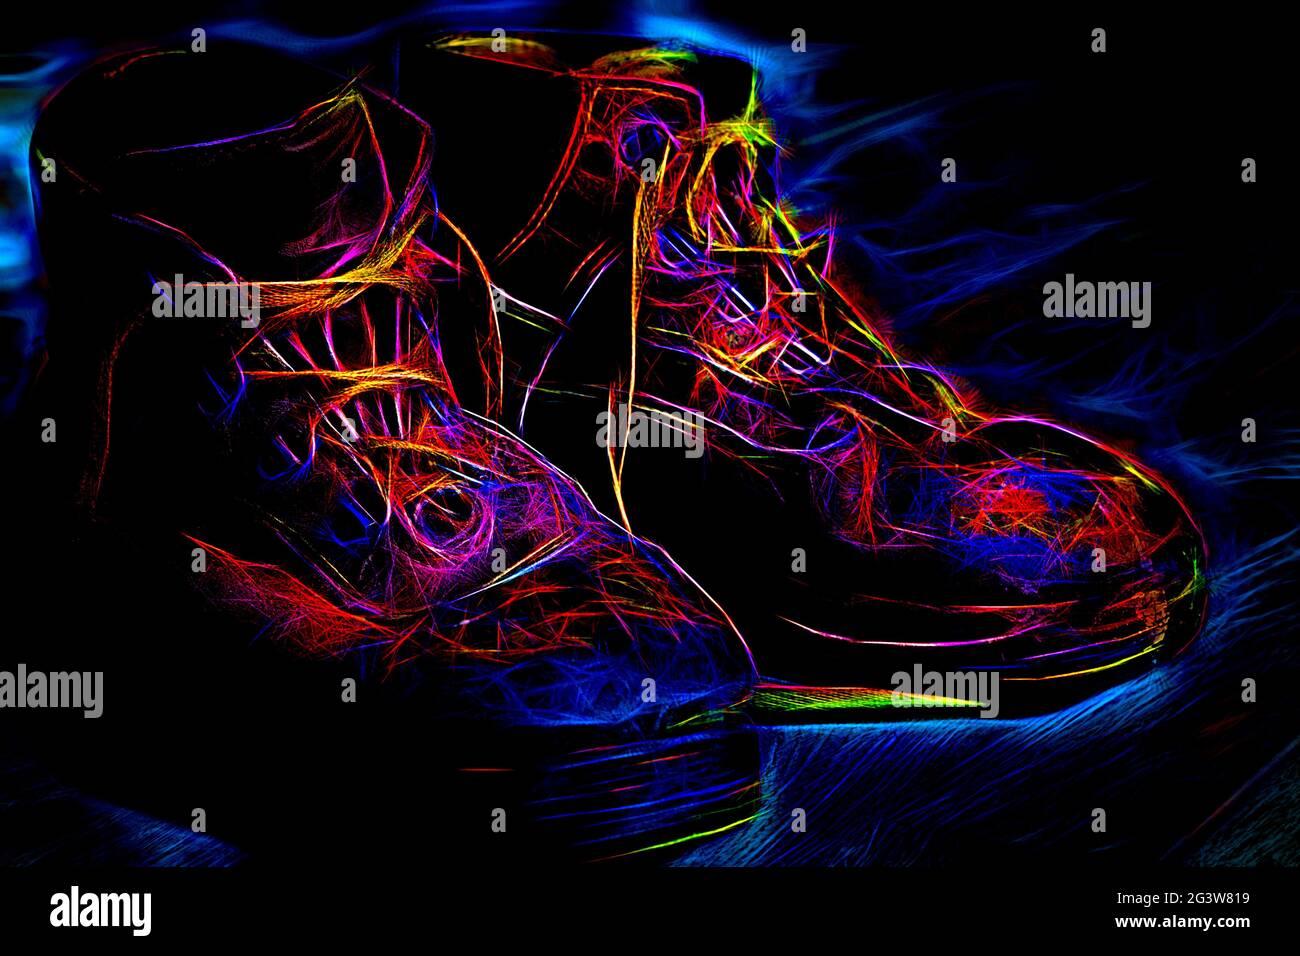 Alte funktionierende Bots aus der Nähe. Illustration von Schuhen mit Neon-Behandlung. Stockfoto